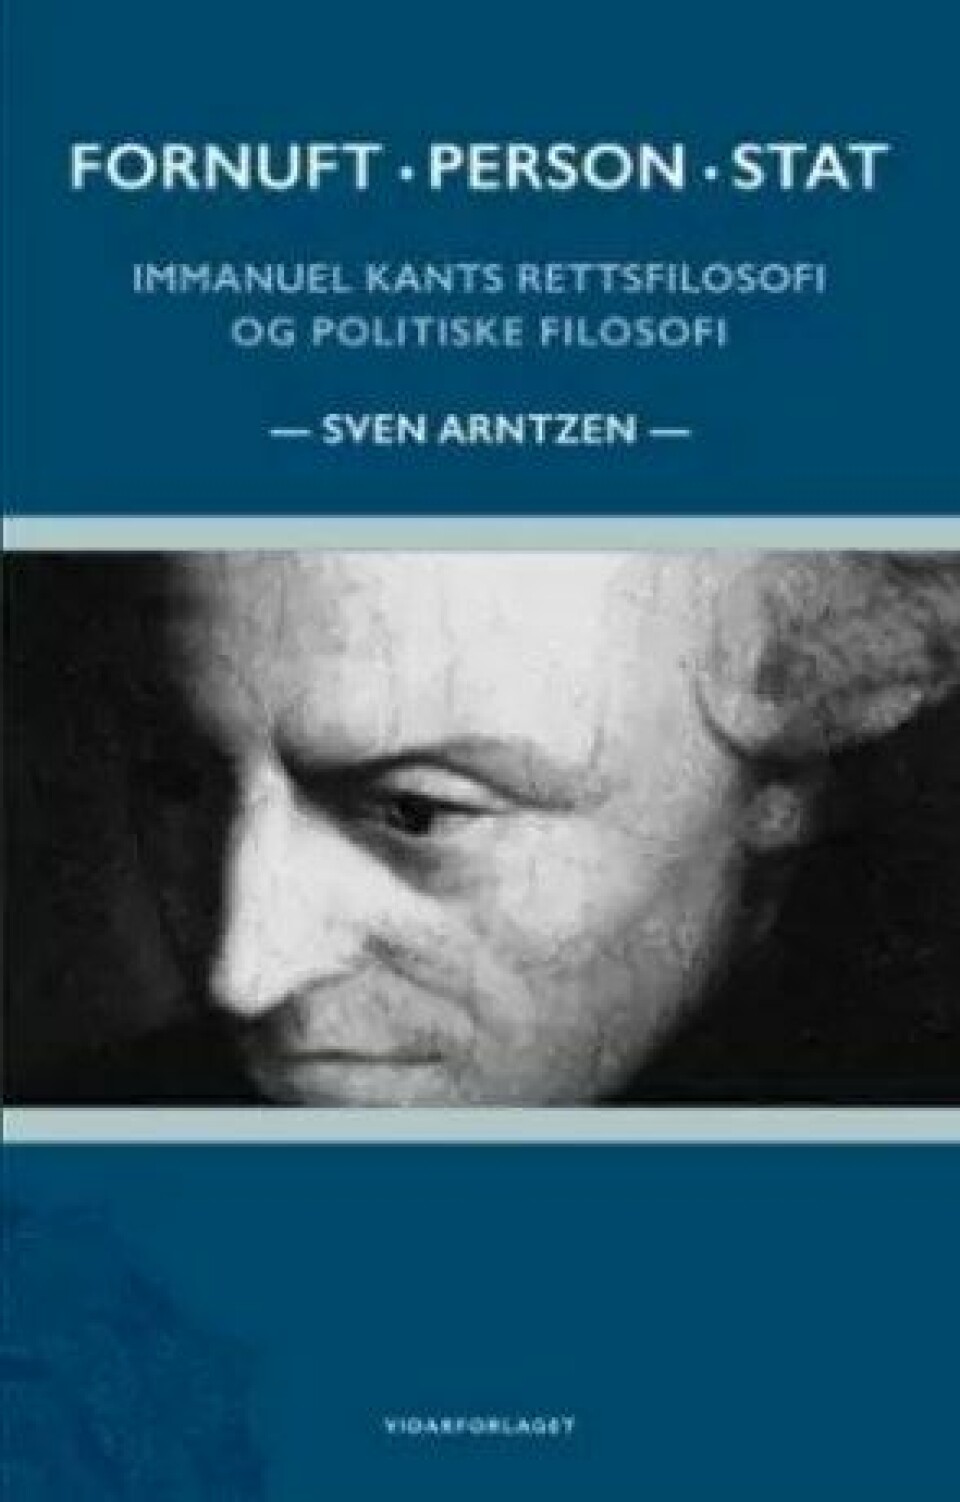 Fornuft, person, stat: Immanuel Kants rettsfilosofi og politiske filosofi av Svein Arntzen (Vidarforlaget, 2020).